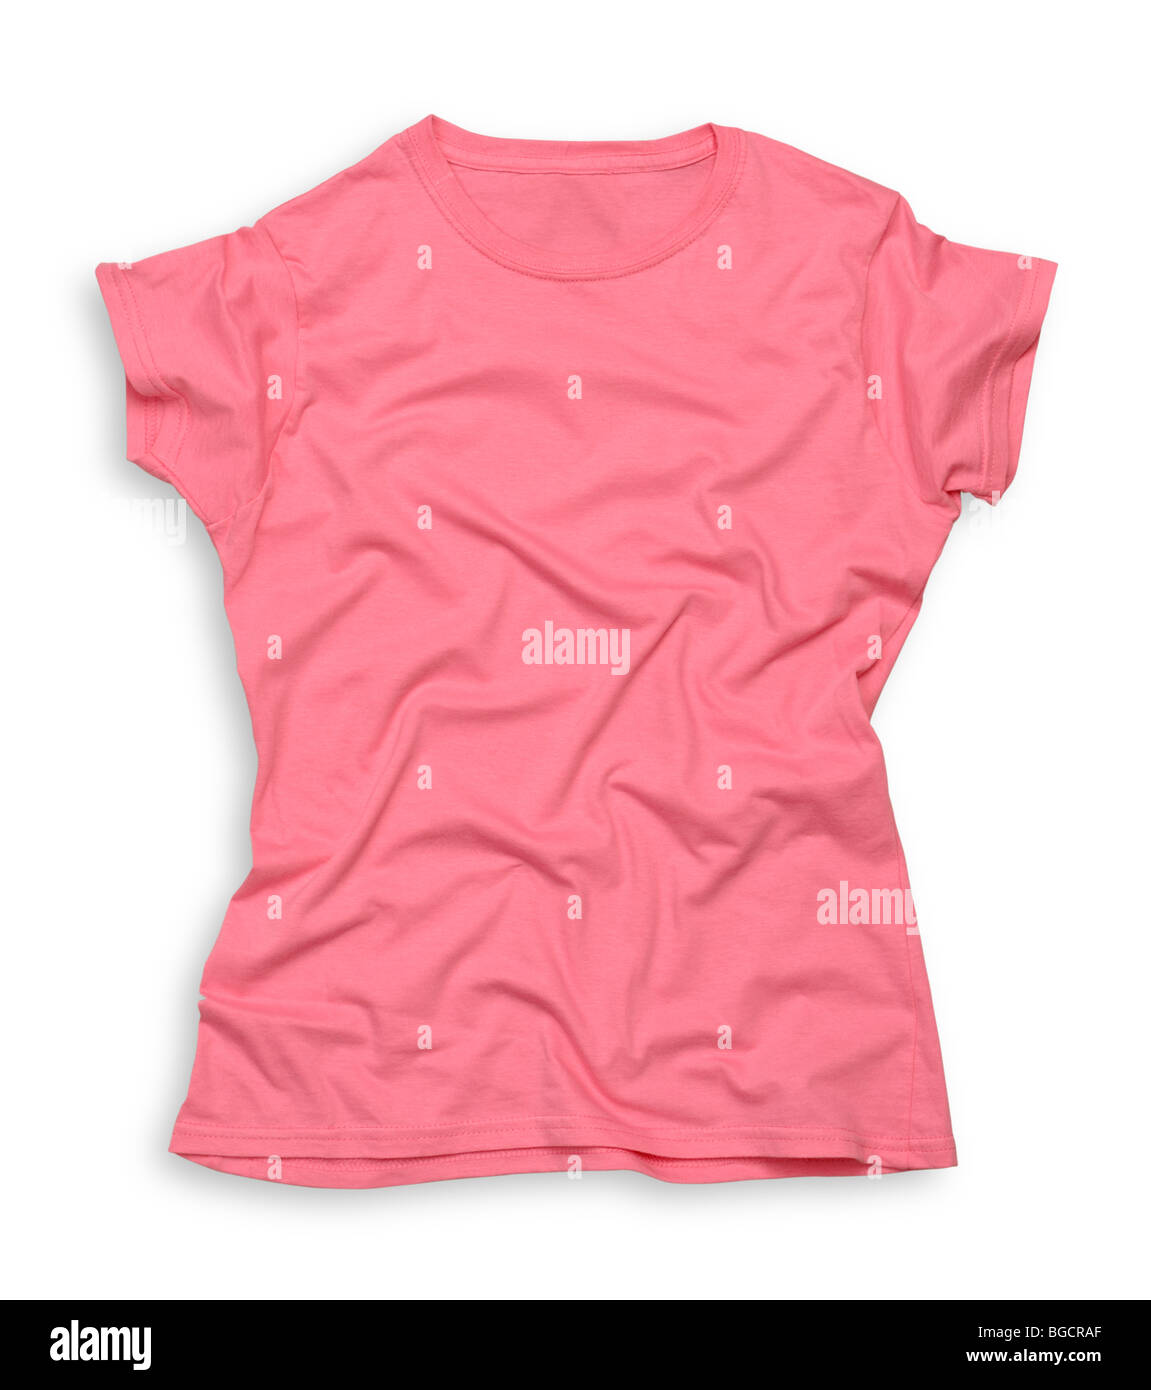 Pink tee shirt Stock Photo